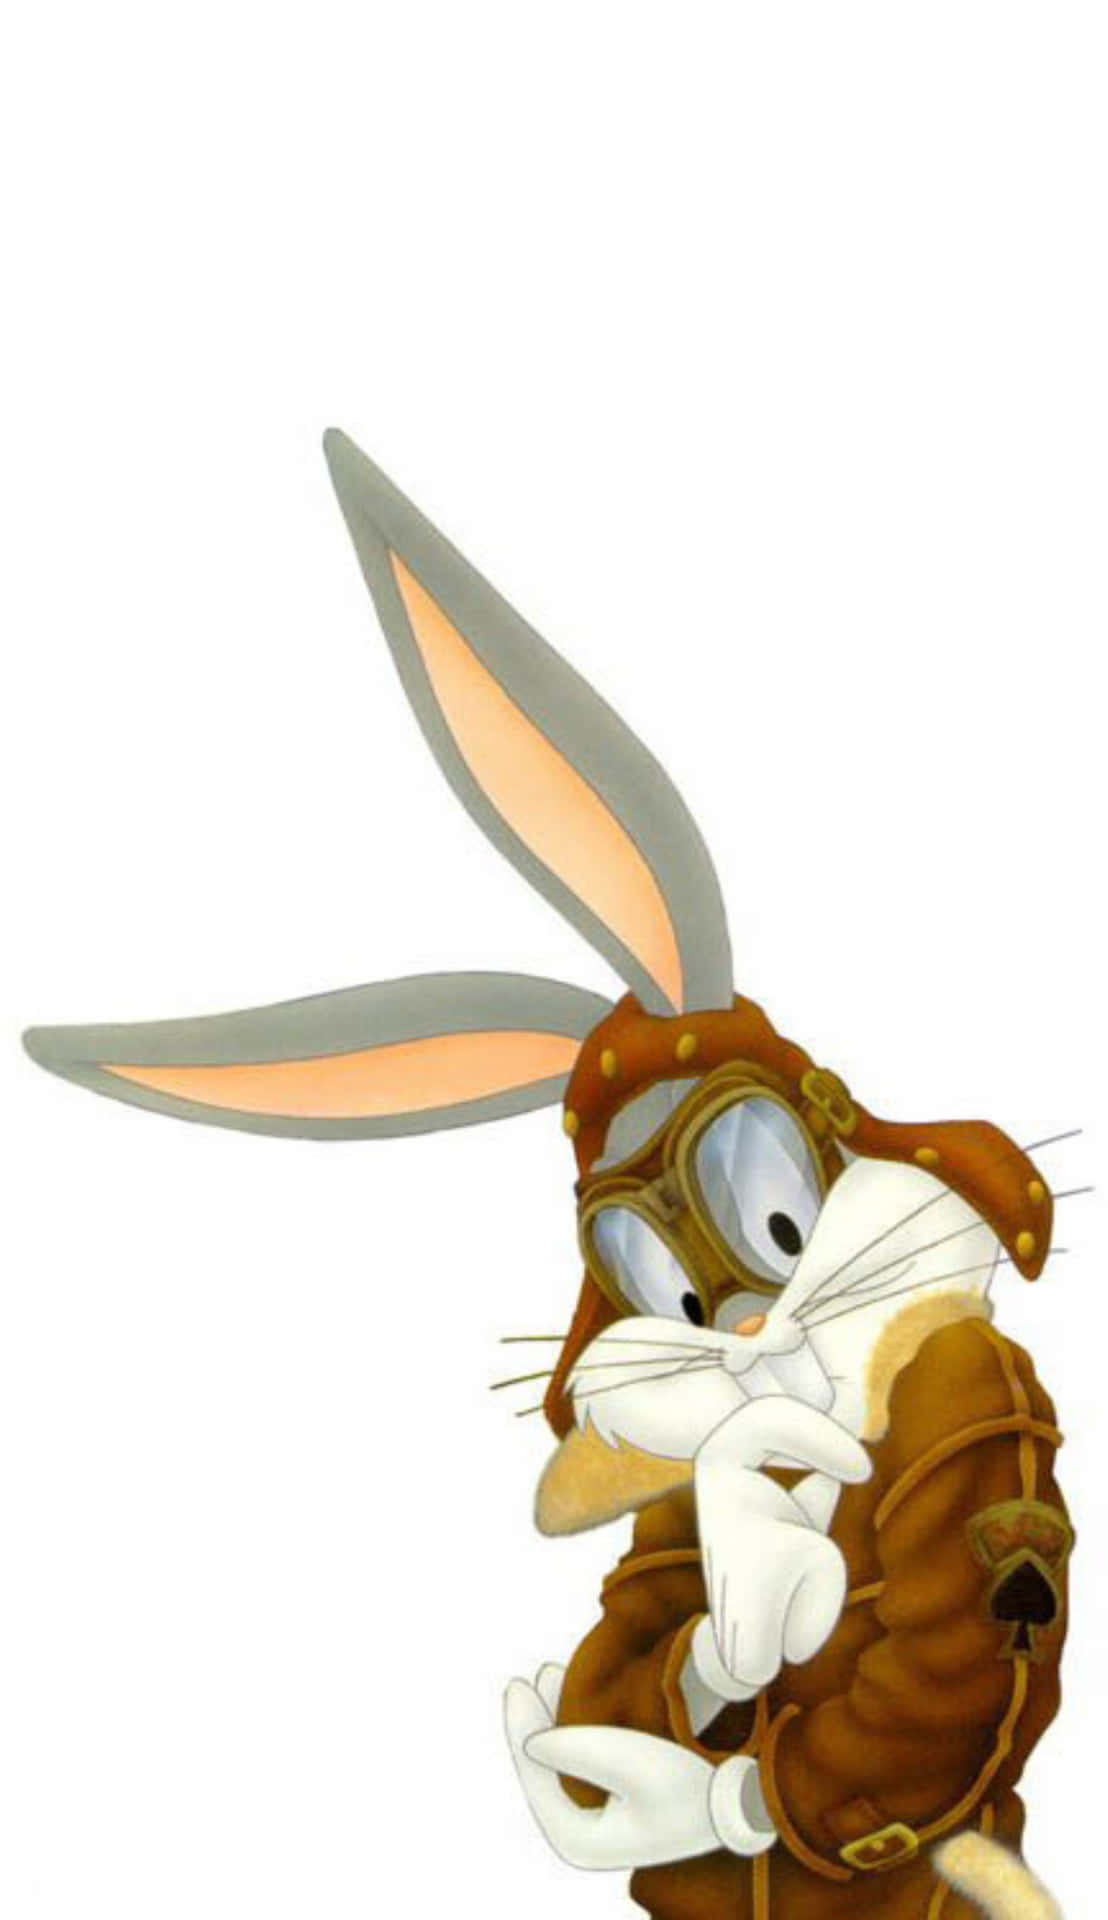 Roger Rabbit Pilot Outfit